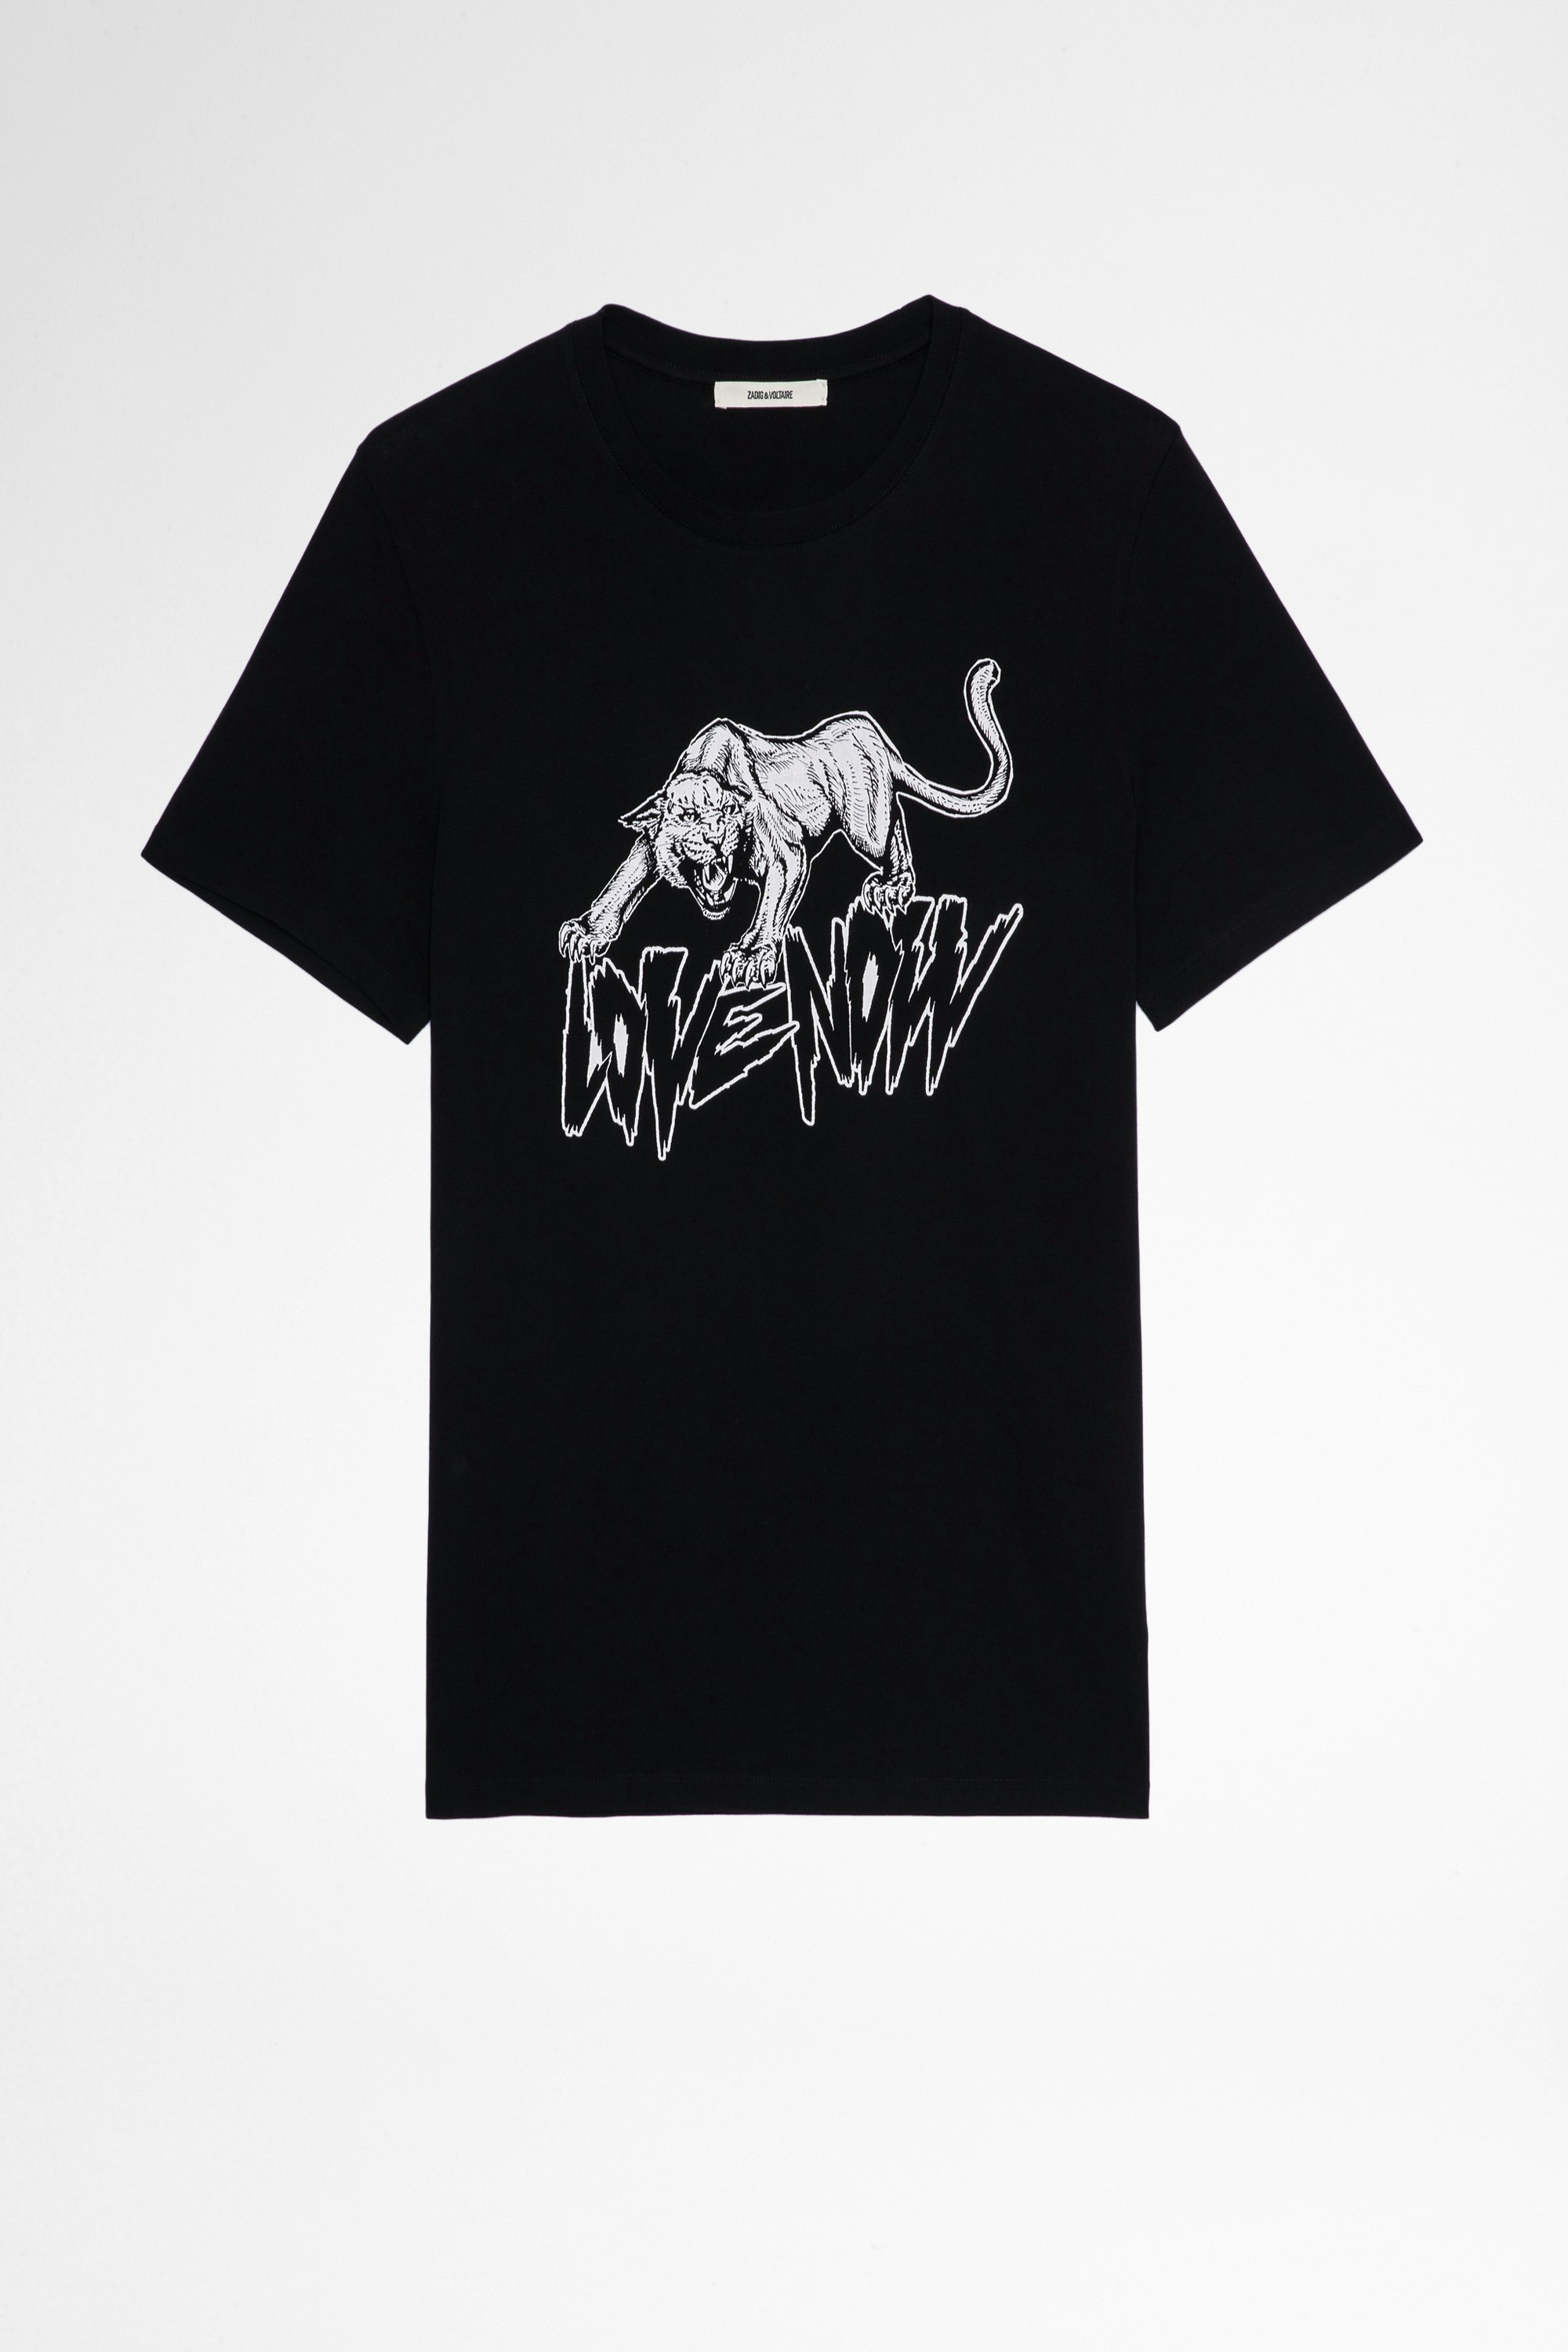 T-Shirt Ted Jaguar Herren-T-Shirt aus schwarzer Baumwolle mit Jaguar-Print. Hergestellt mit Fasern aus biologischem Anbau